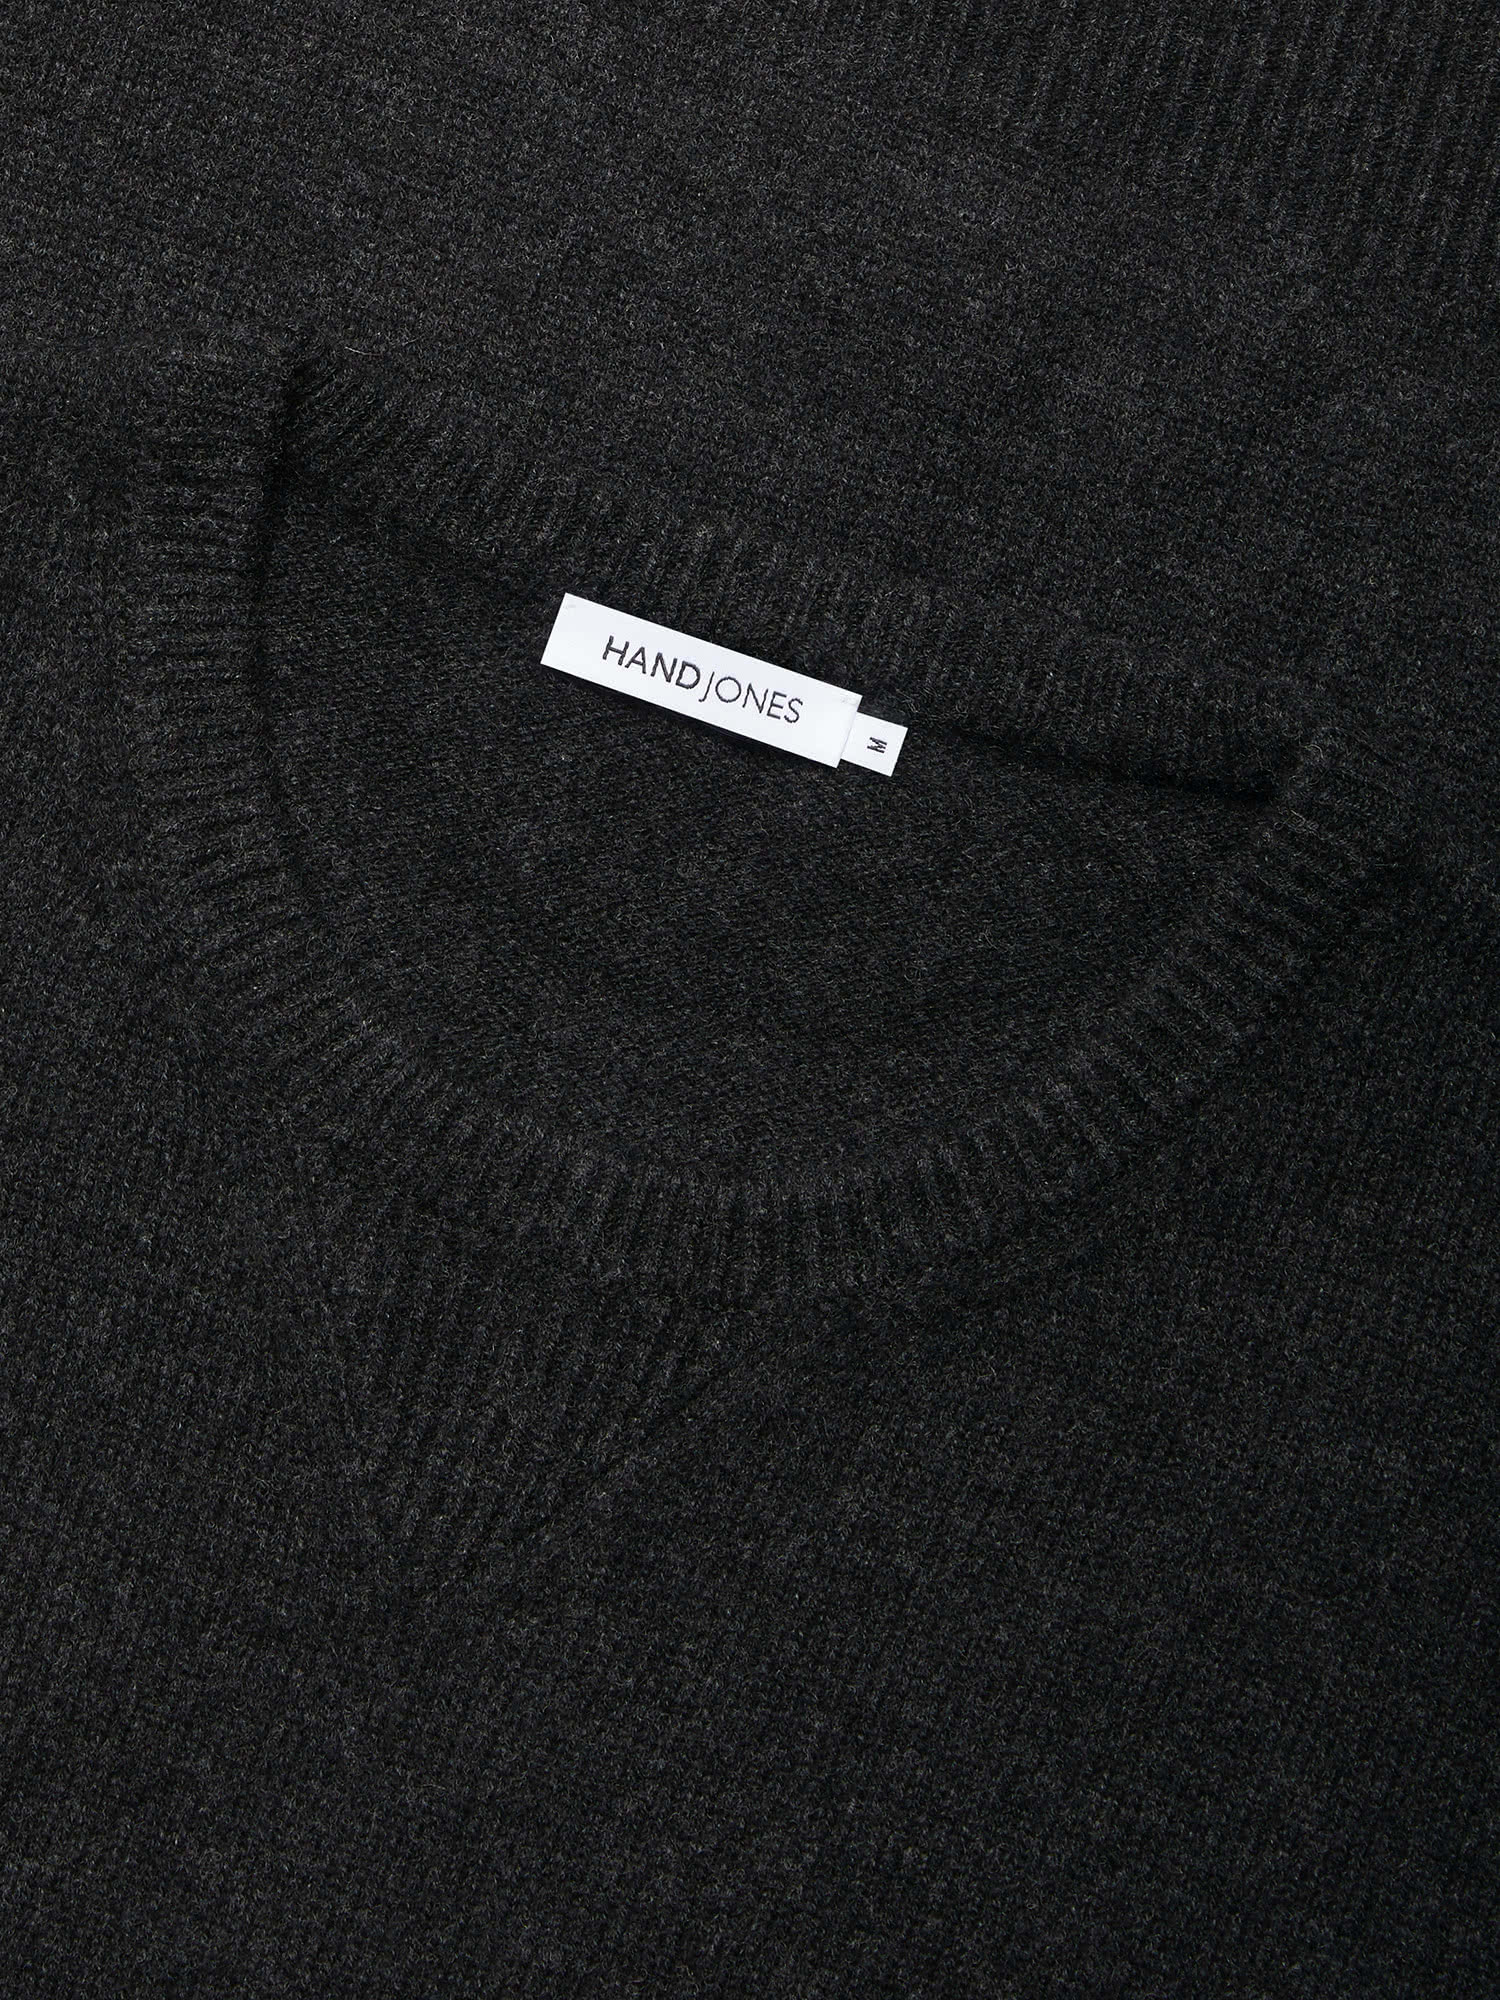 Black Wool Cashmere Sweatshirt Sweater | Men's knitwear | Hand & Jones